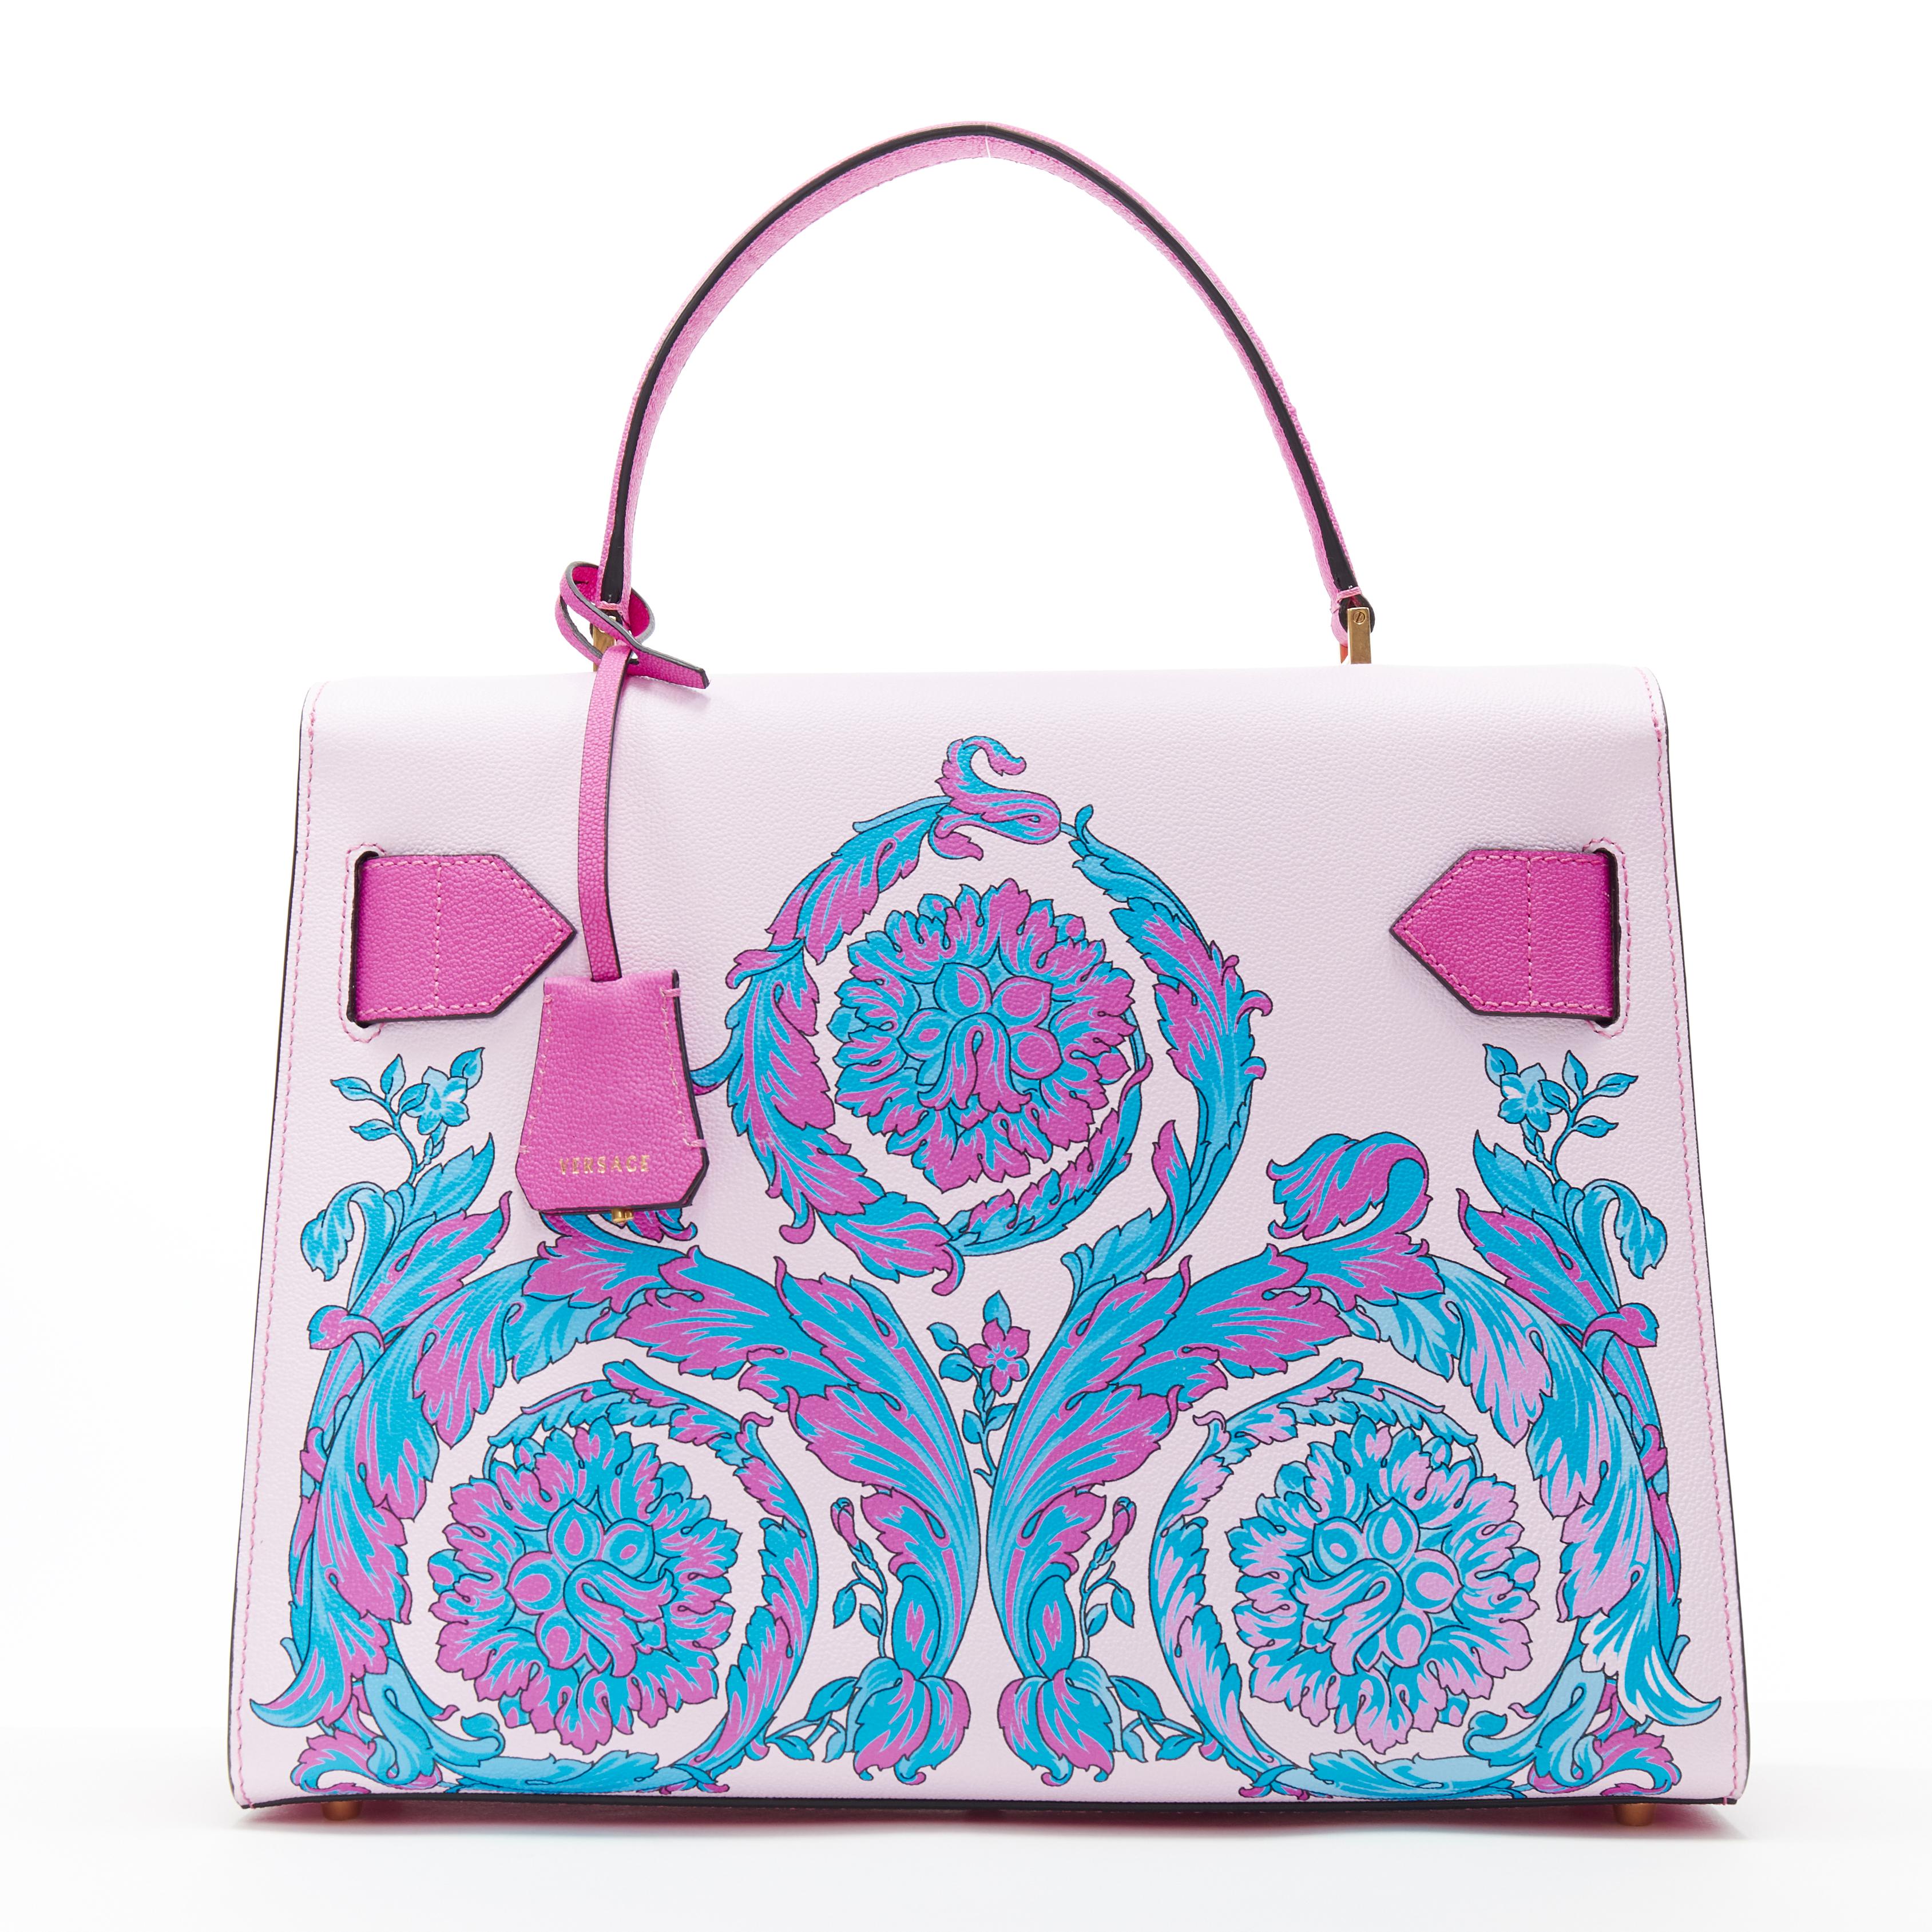 Women's new VERSACE Technicolor Baroque Diana Tribute print top handle Kelly satchel bag